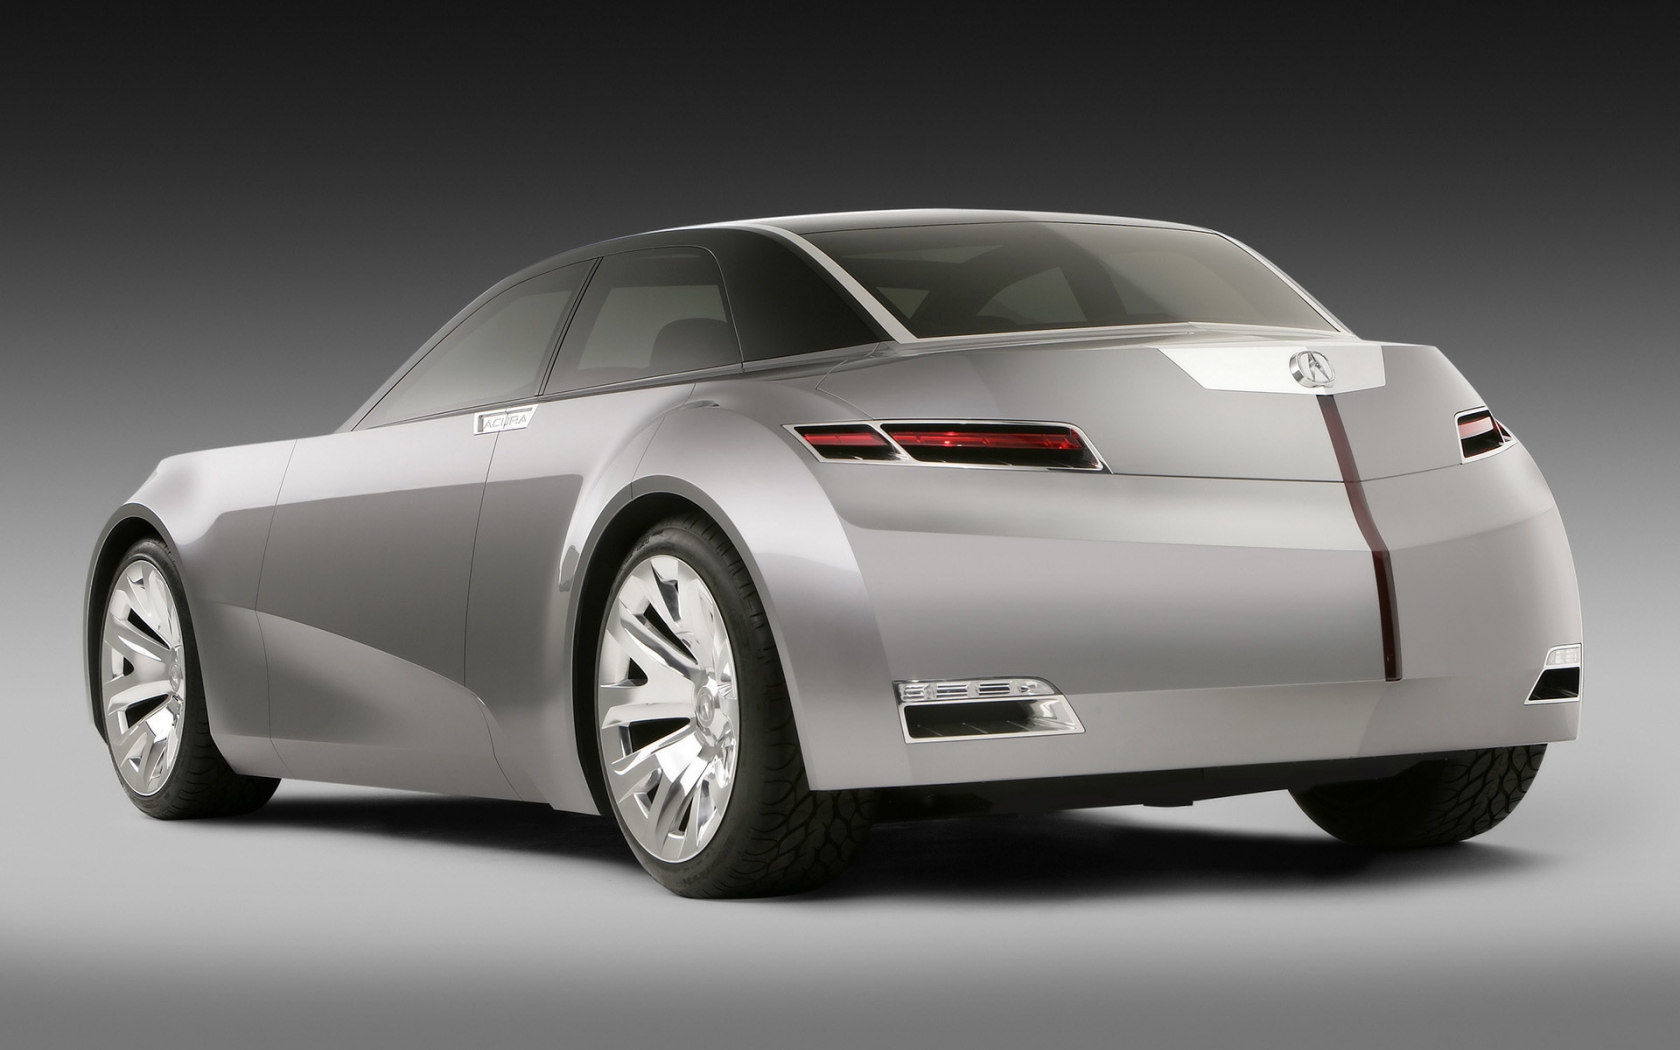 Acura Sedan Concept Rear for 1680 x 1050 widescreen resolution